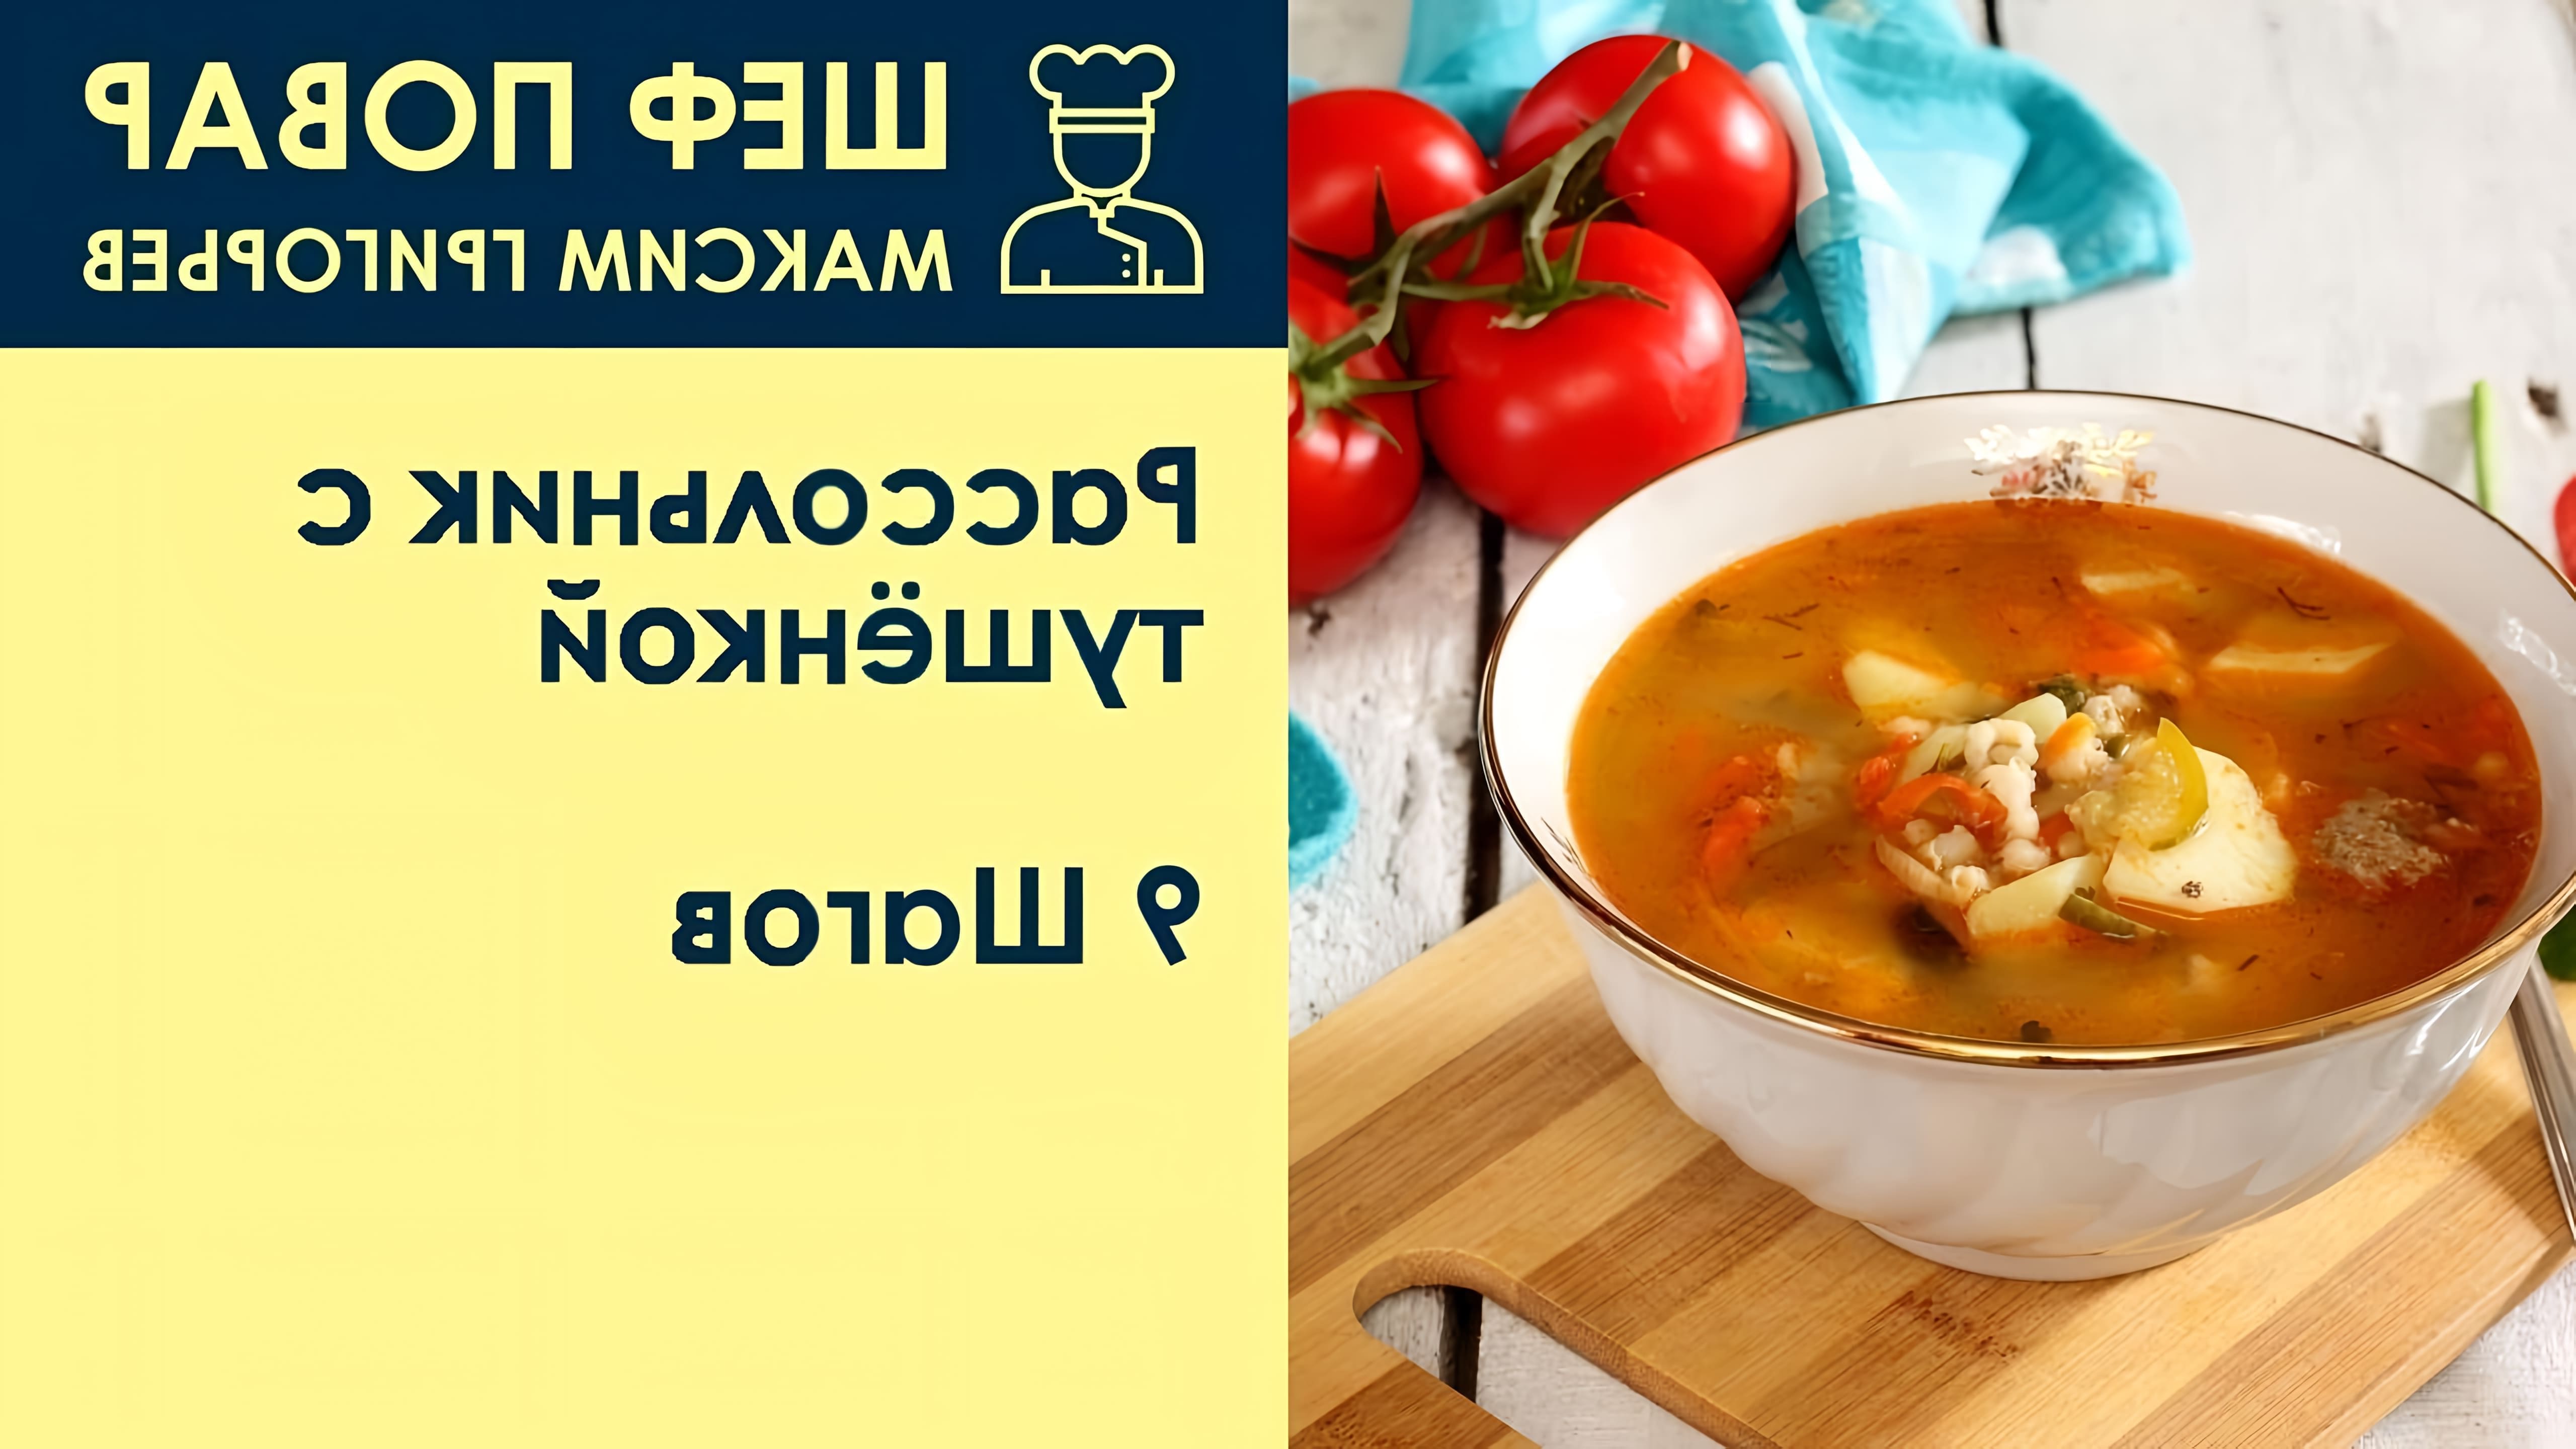 В данном видео шеф-повар Максим Григорьев демонстрирует рецепт приготовления рассольника с тушенкой